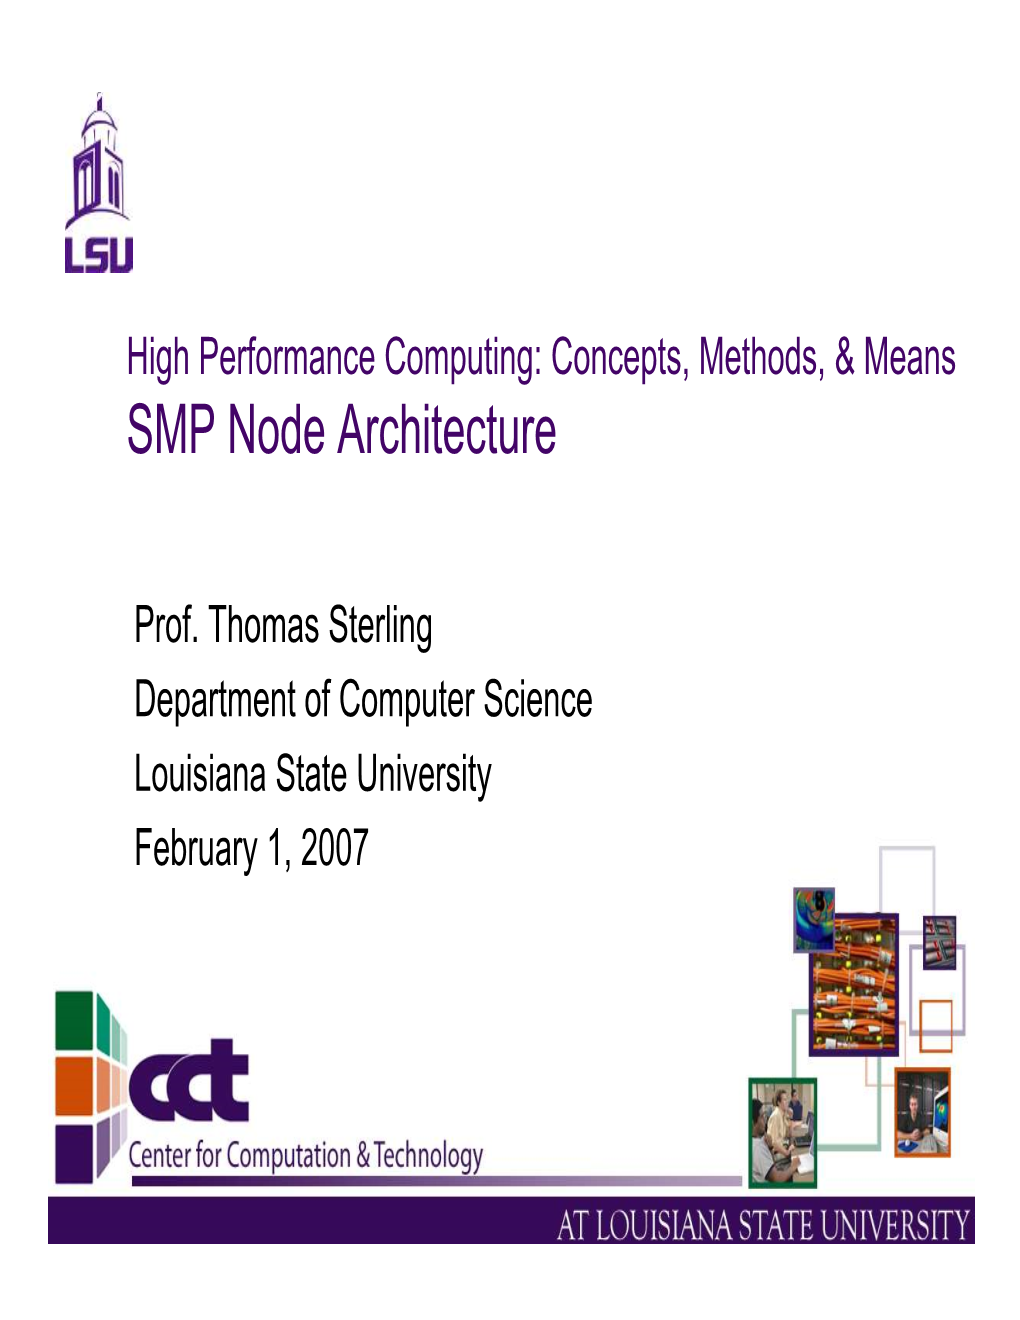 SMP Node Architecture